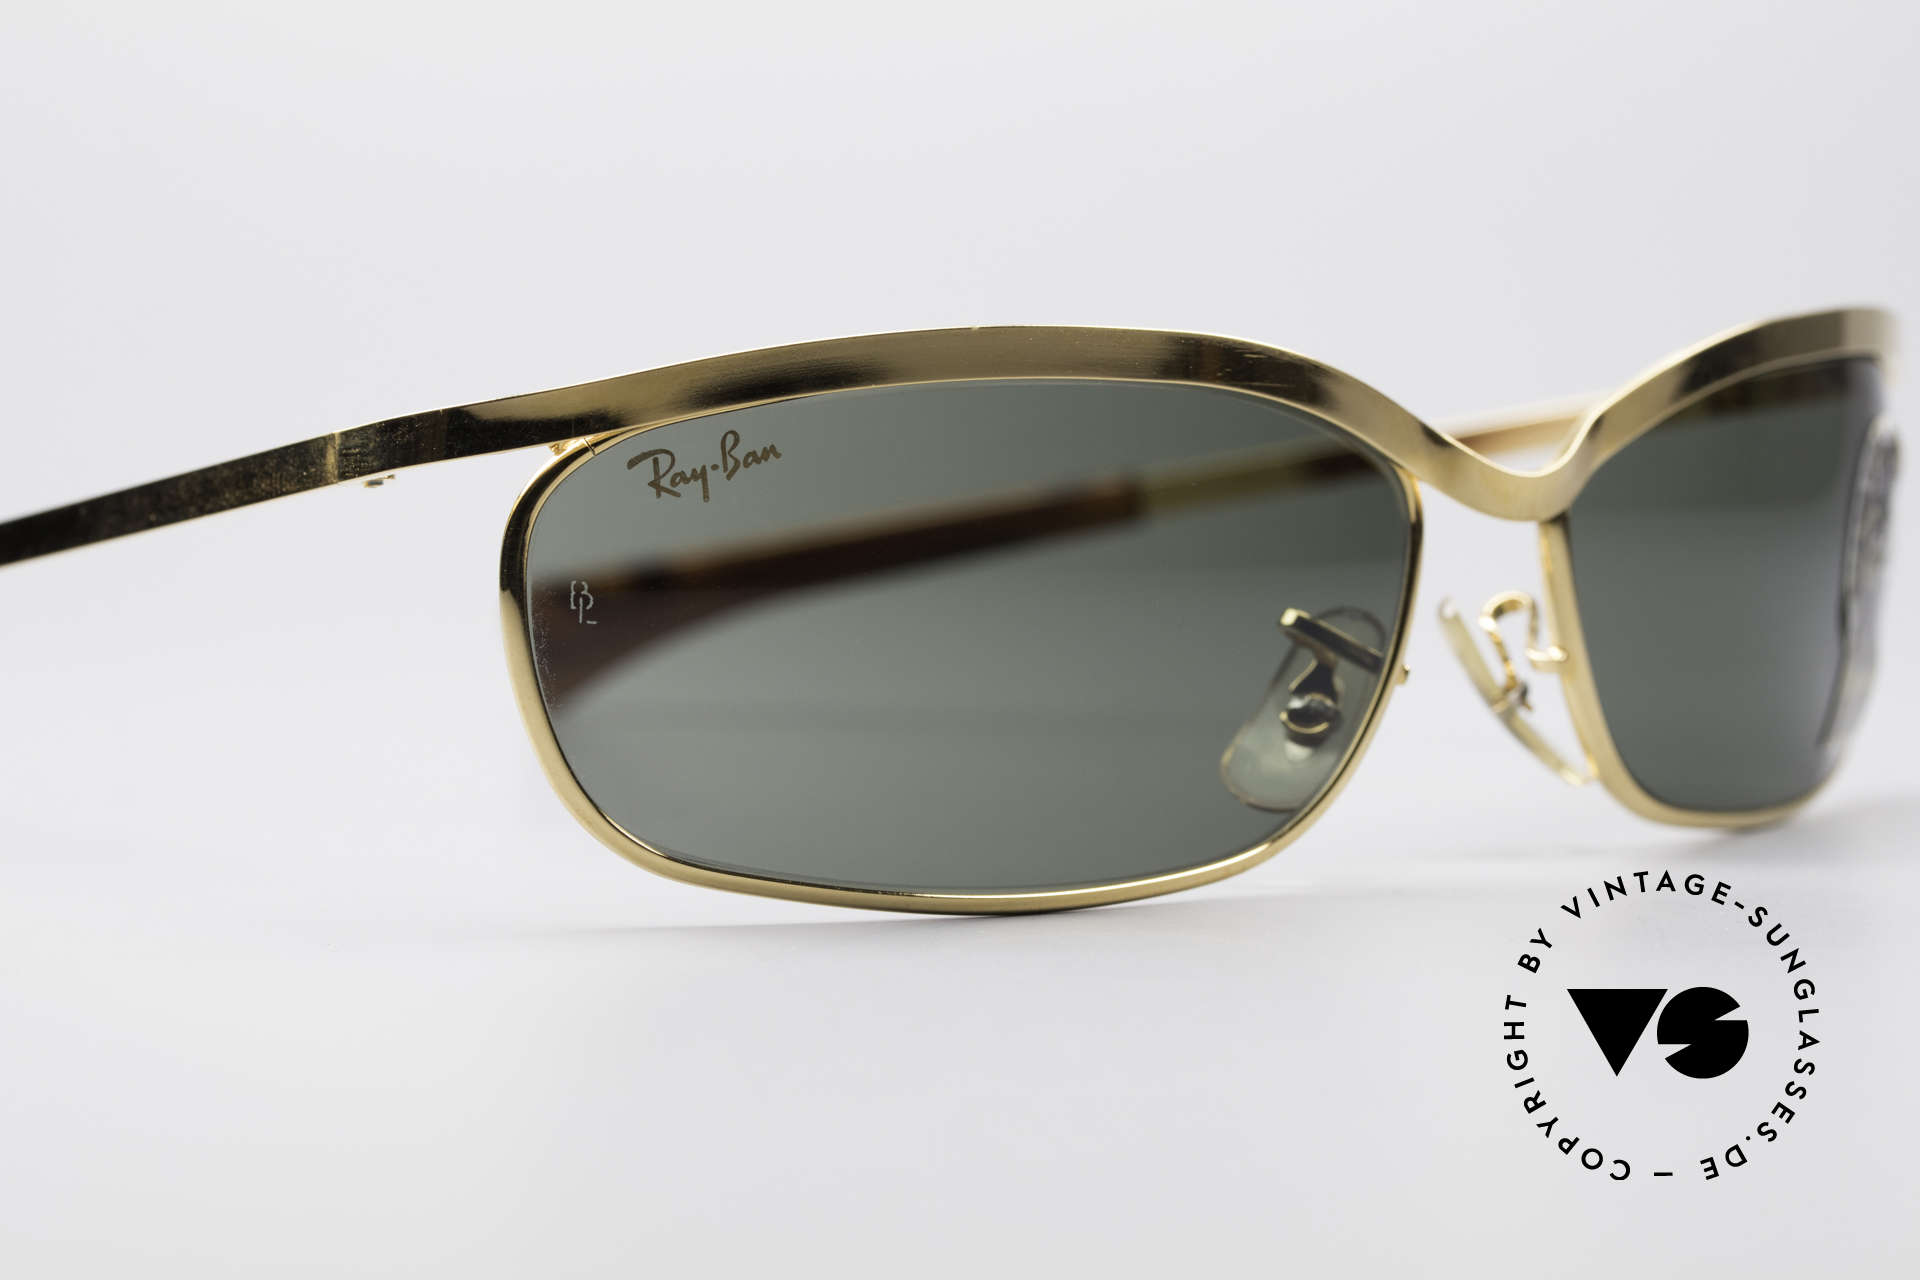 Sunglasses Ray Ban Olympian Vi Deluxe Bandl Usa Vintage Shades 